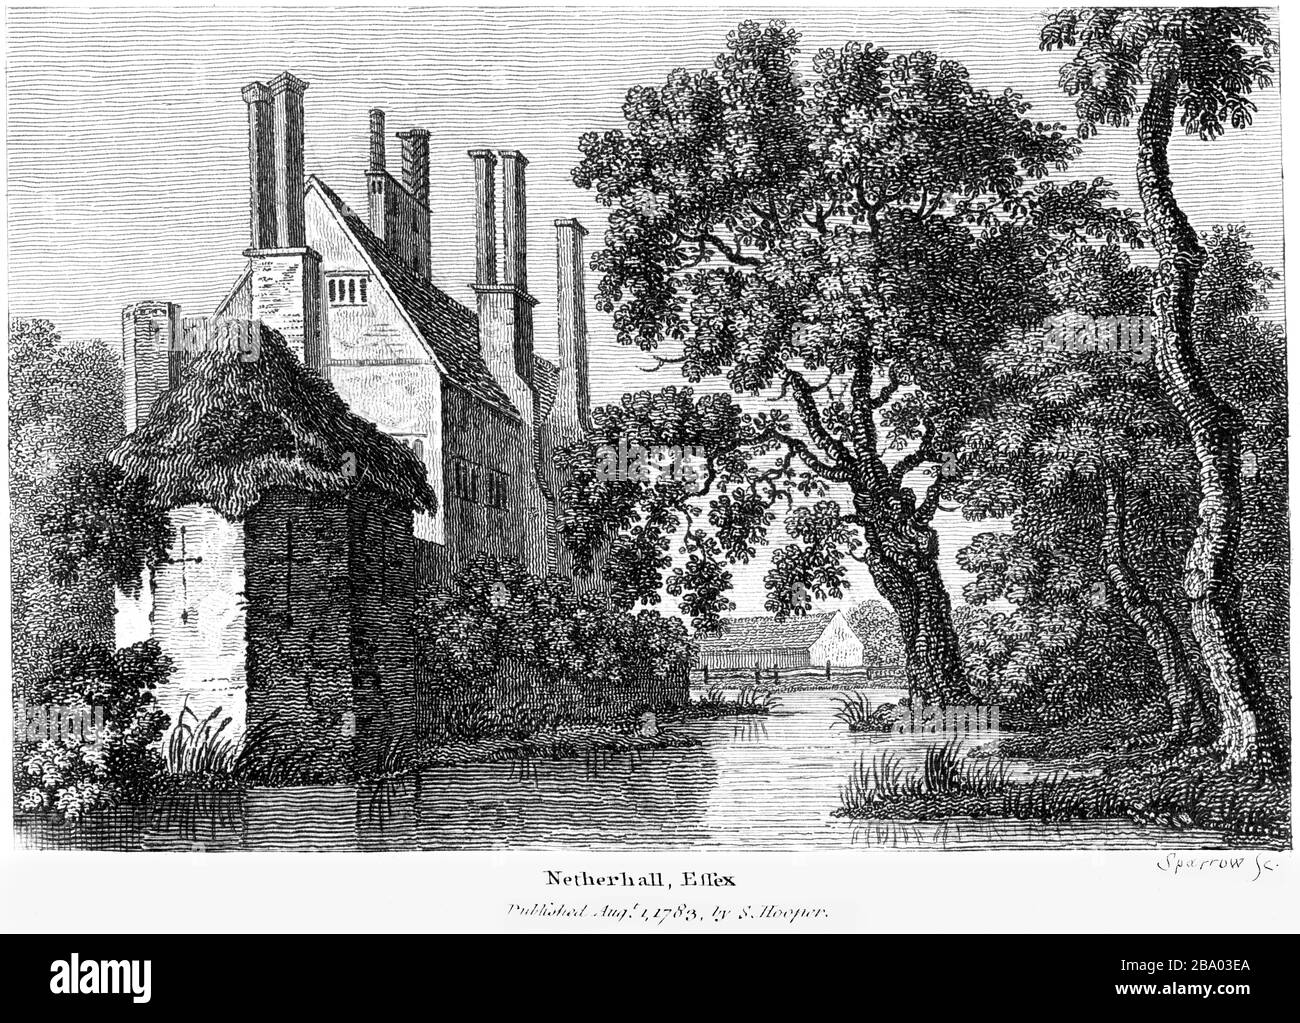 Une gravure de Netherhall (Nether Hall) Essex 1783 a été numérisée à haute résolution à partir d'un livre publié vers 1786. Considéré comme libre de droits d'auteur. Banque D'Images